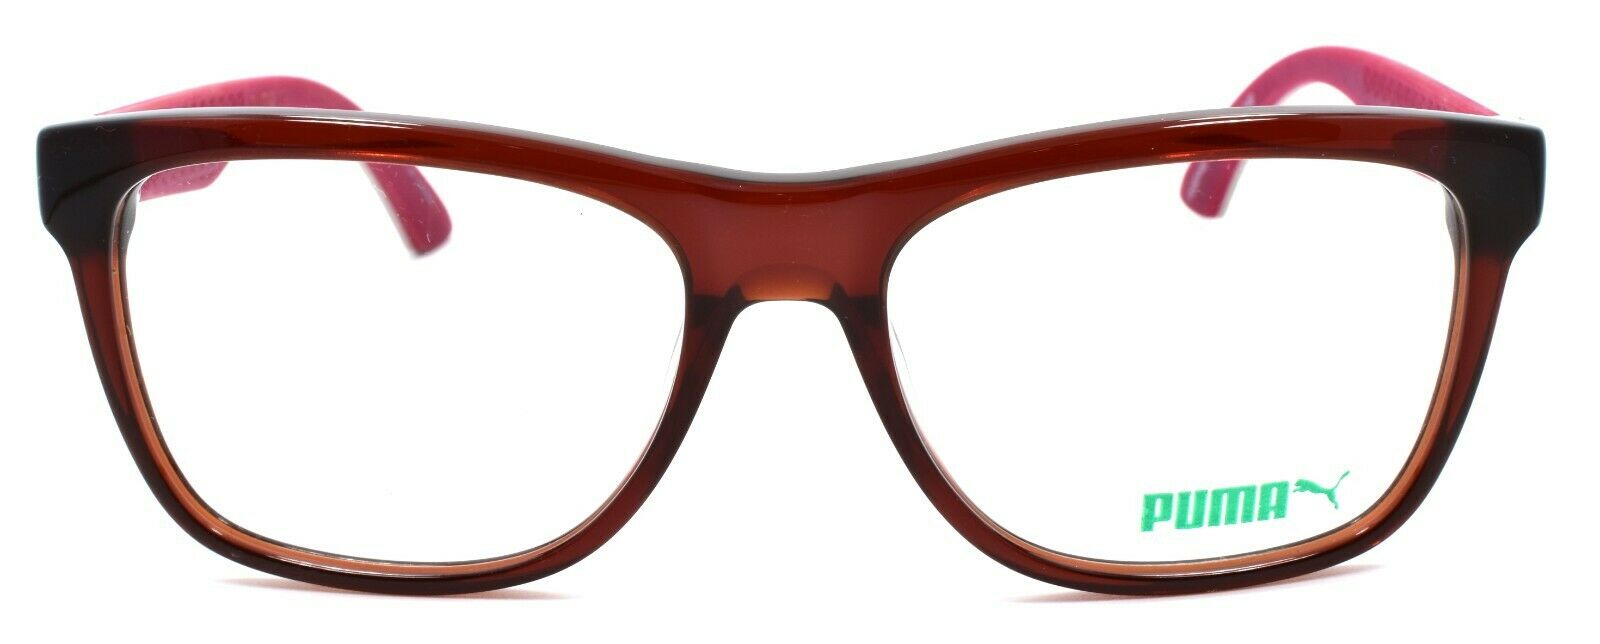 2-PUMA PU0044O 005 Unisex Eyeglasses Frames 54-17-140 Red & Ivory w/ Suede-889652015323-IKSpecs